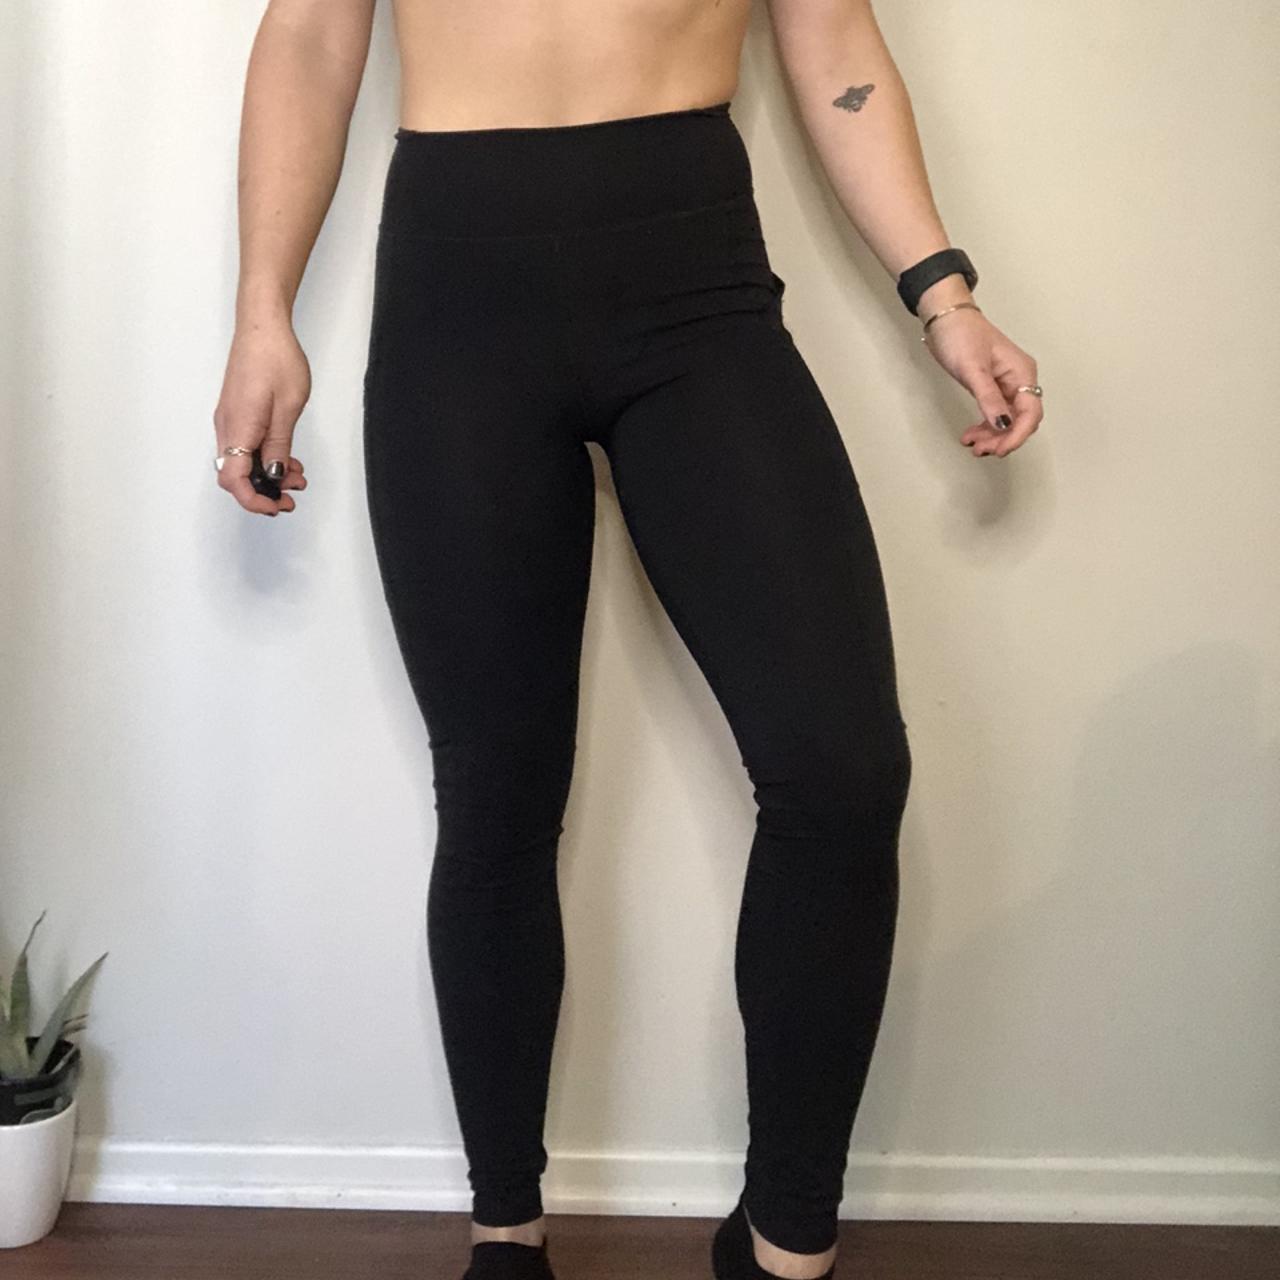 paragon fitwear leggings black full length leggings - Depop